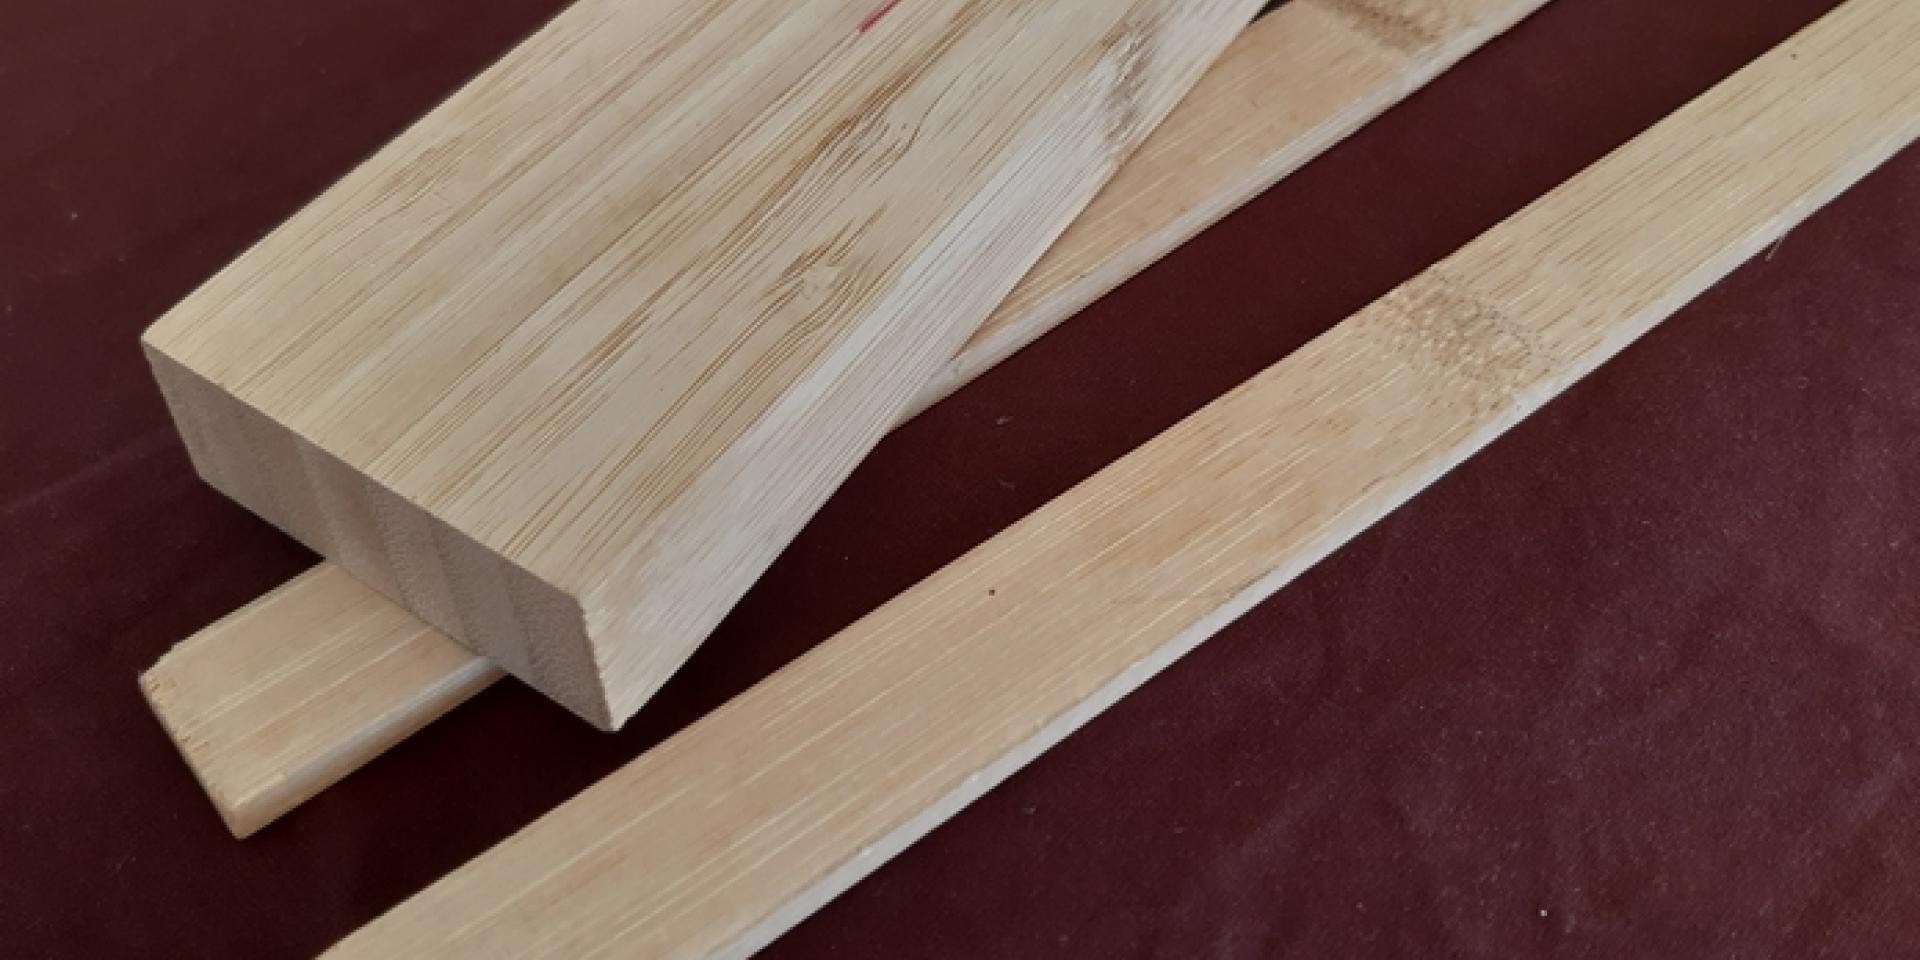 Barre rectangulaire verticale et lamelles de bambou